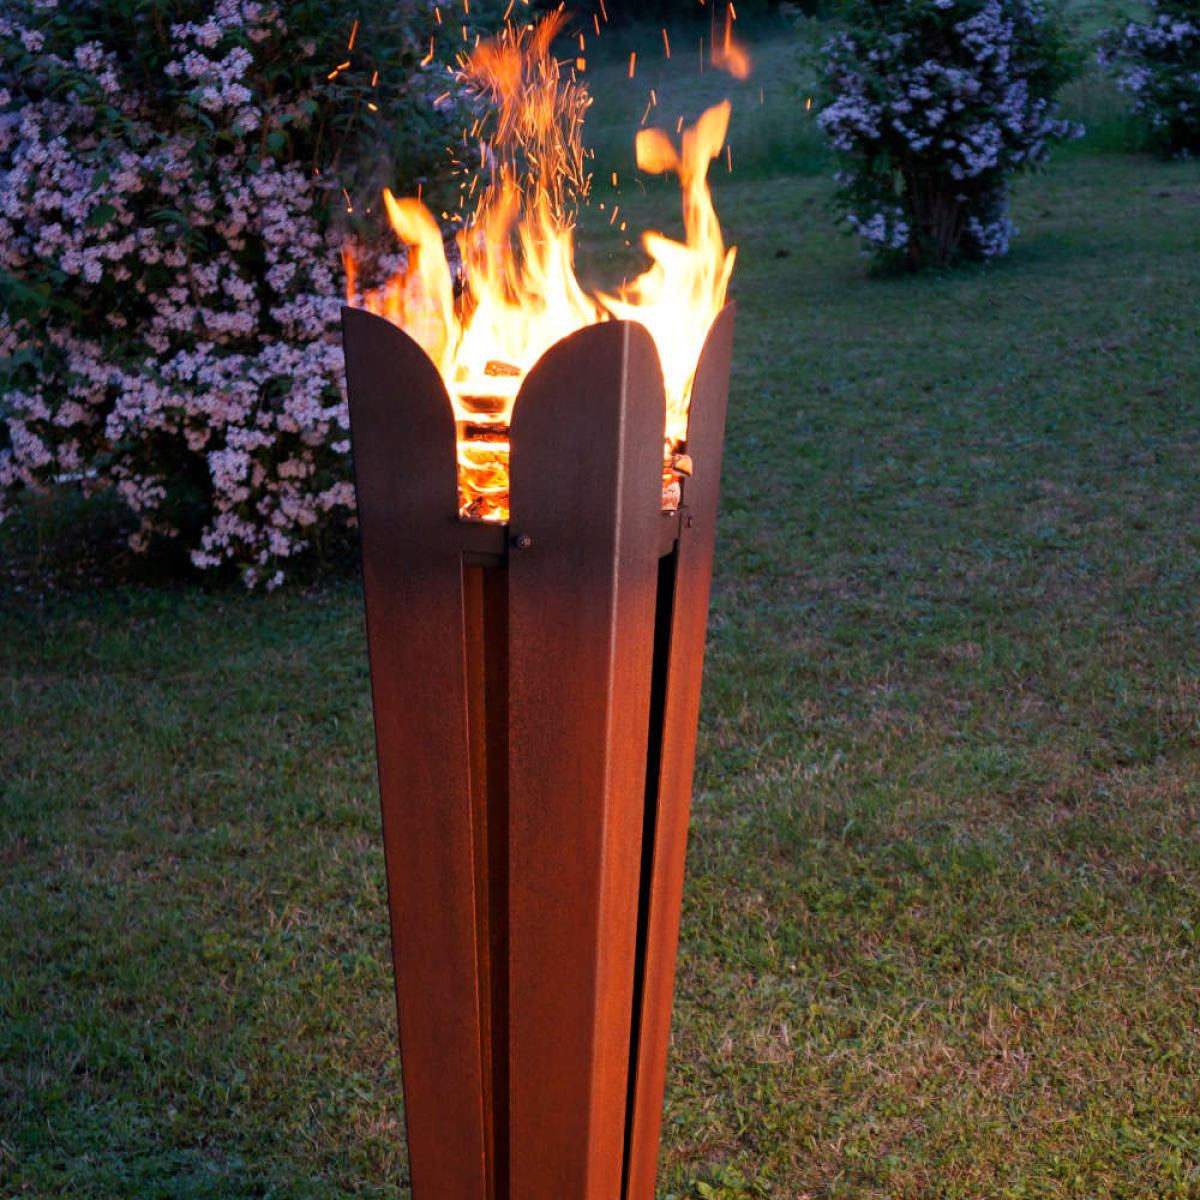 Sculptural Fireplace / Garden Torch made of Weatherproof Steel